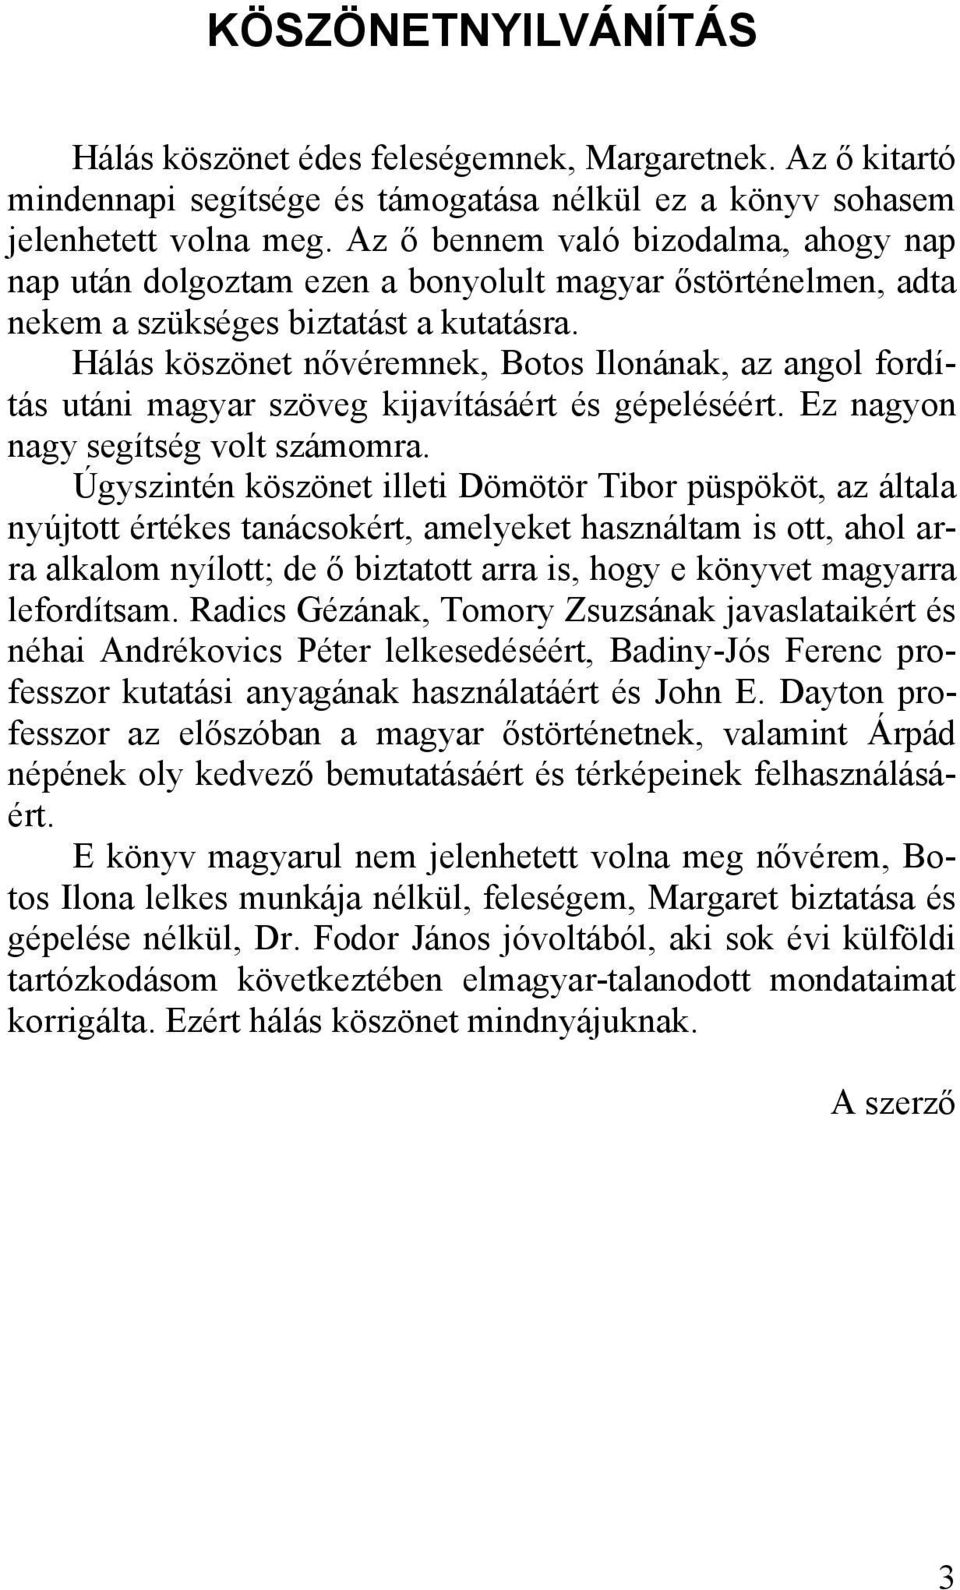 Hálás köszönet nővéremnek, Botos Ilonának, az angol fordítás utáni magyar szöveg kijavításáért és gépeléséért. Ez nagyon nagy segítség volt számomra.